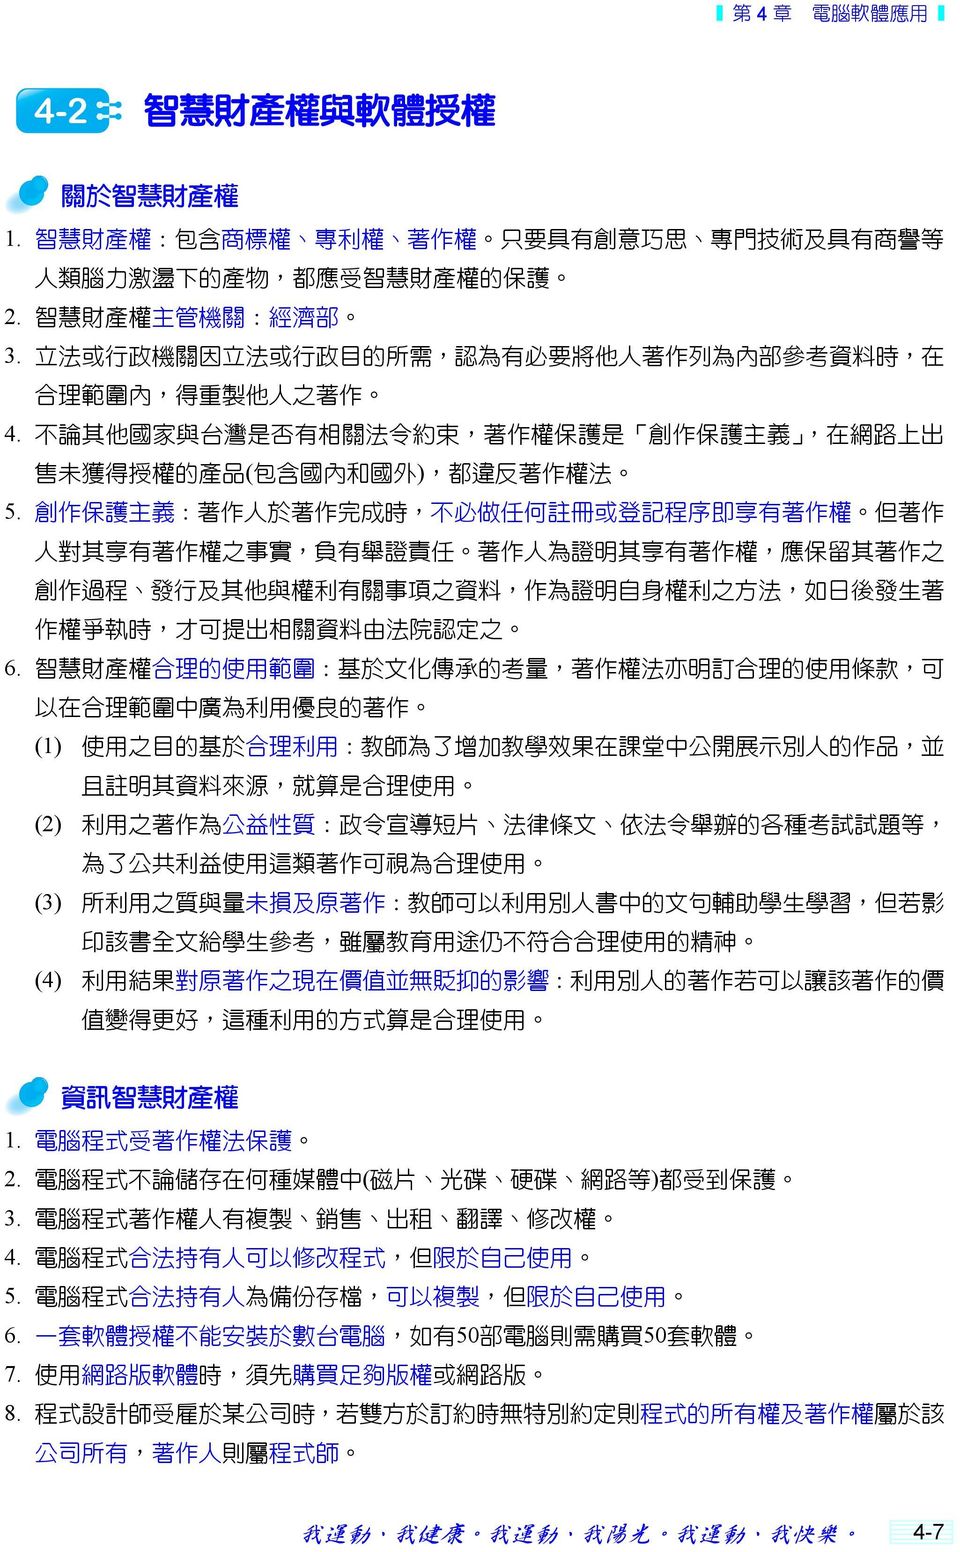 不 論 其 他 國 家 與 台 灣 是 否 有 相 關 法 令 約 束, 著 作 權 保 護 是 創 作 保 護 主 義, 在 網 路 上 出 售 未 獲 得 授 權 的 產 品 ( 包 含 國 內 和 國 外 ), 都 違 反 著 作 權 法 5.